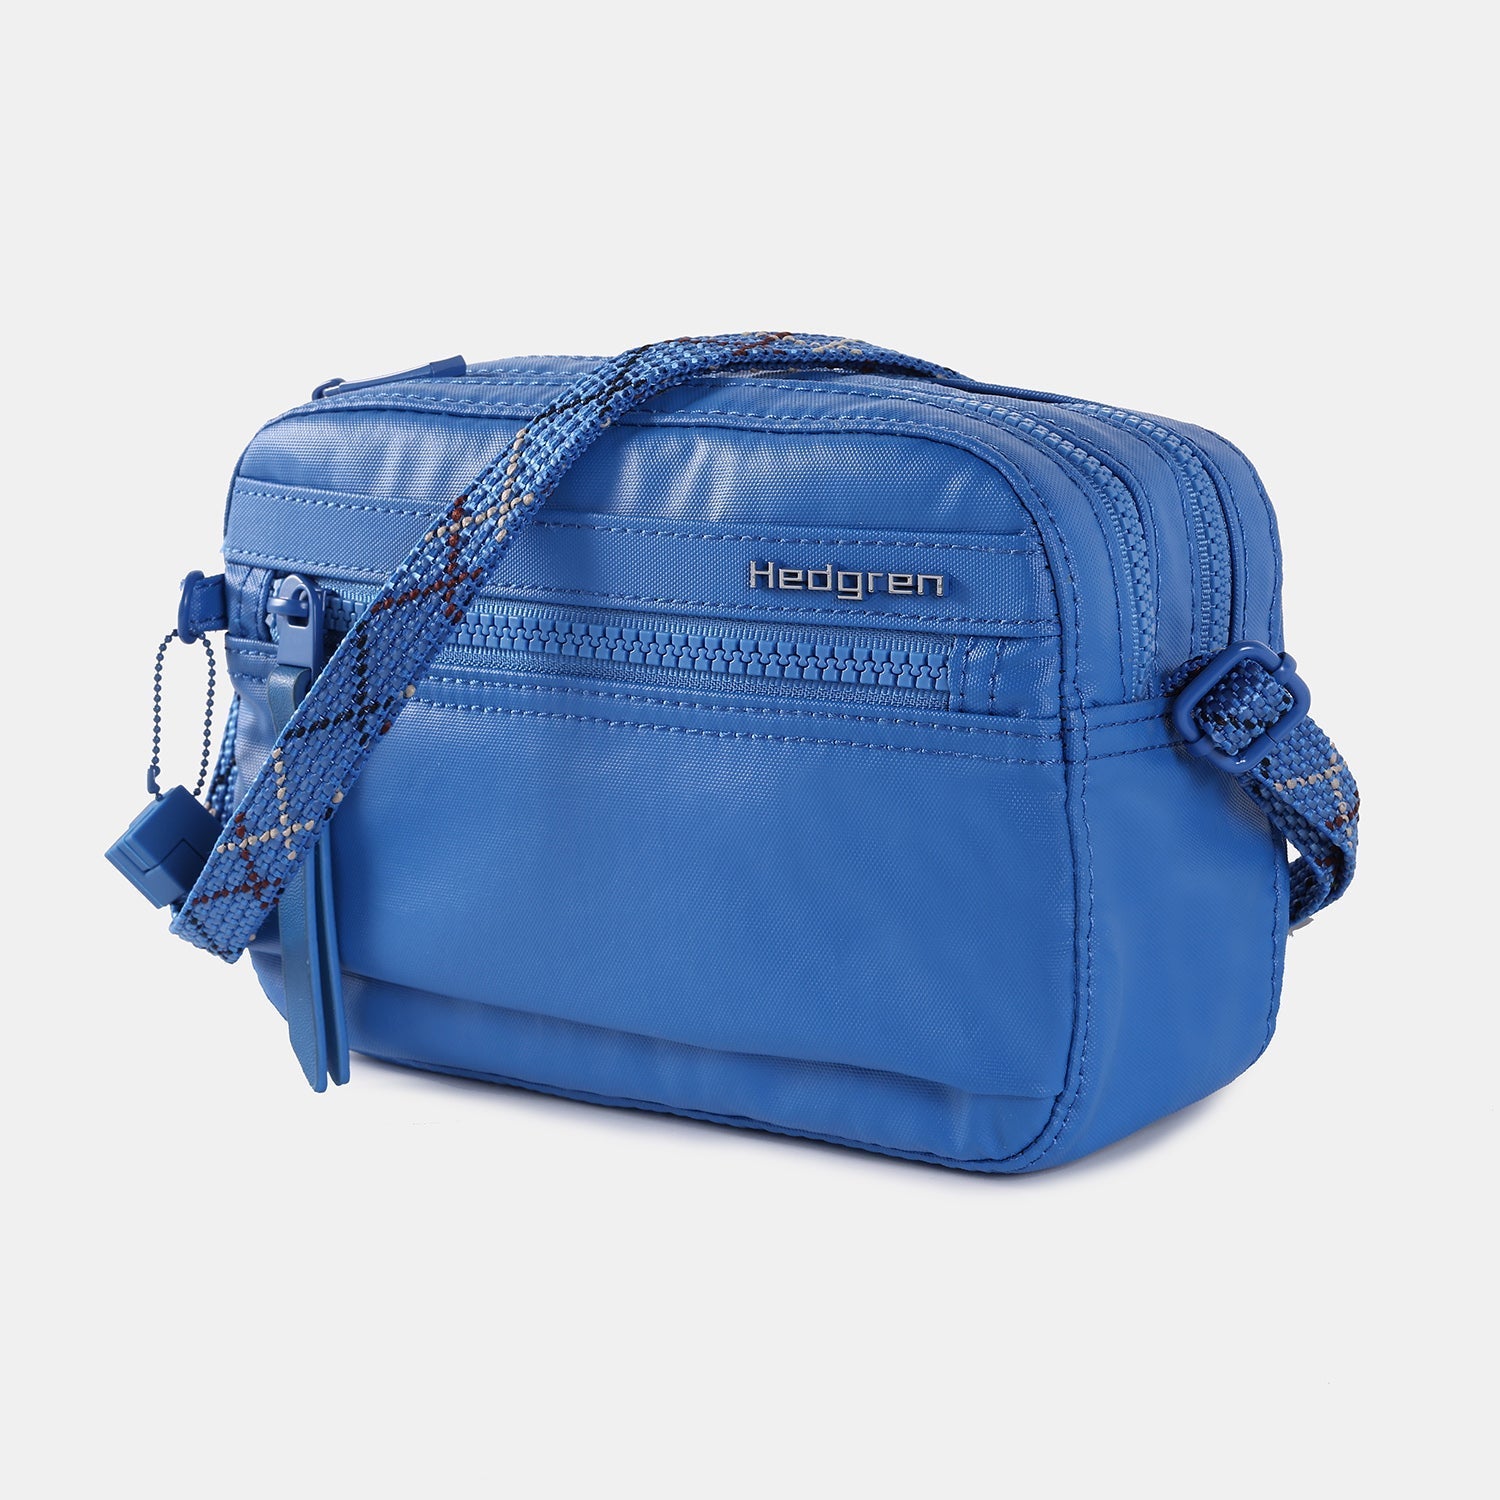 Hedgren Marion Sustainably Made Crossbody: Handbags: Amazon.com